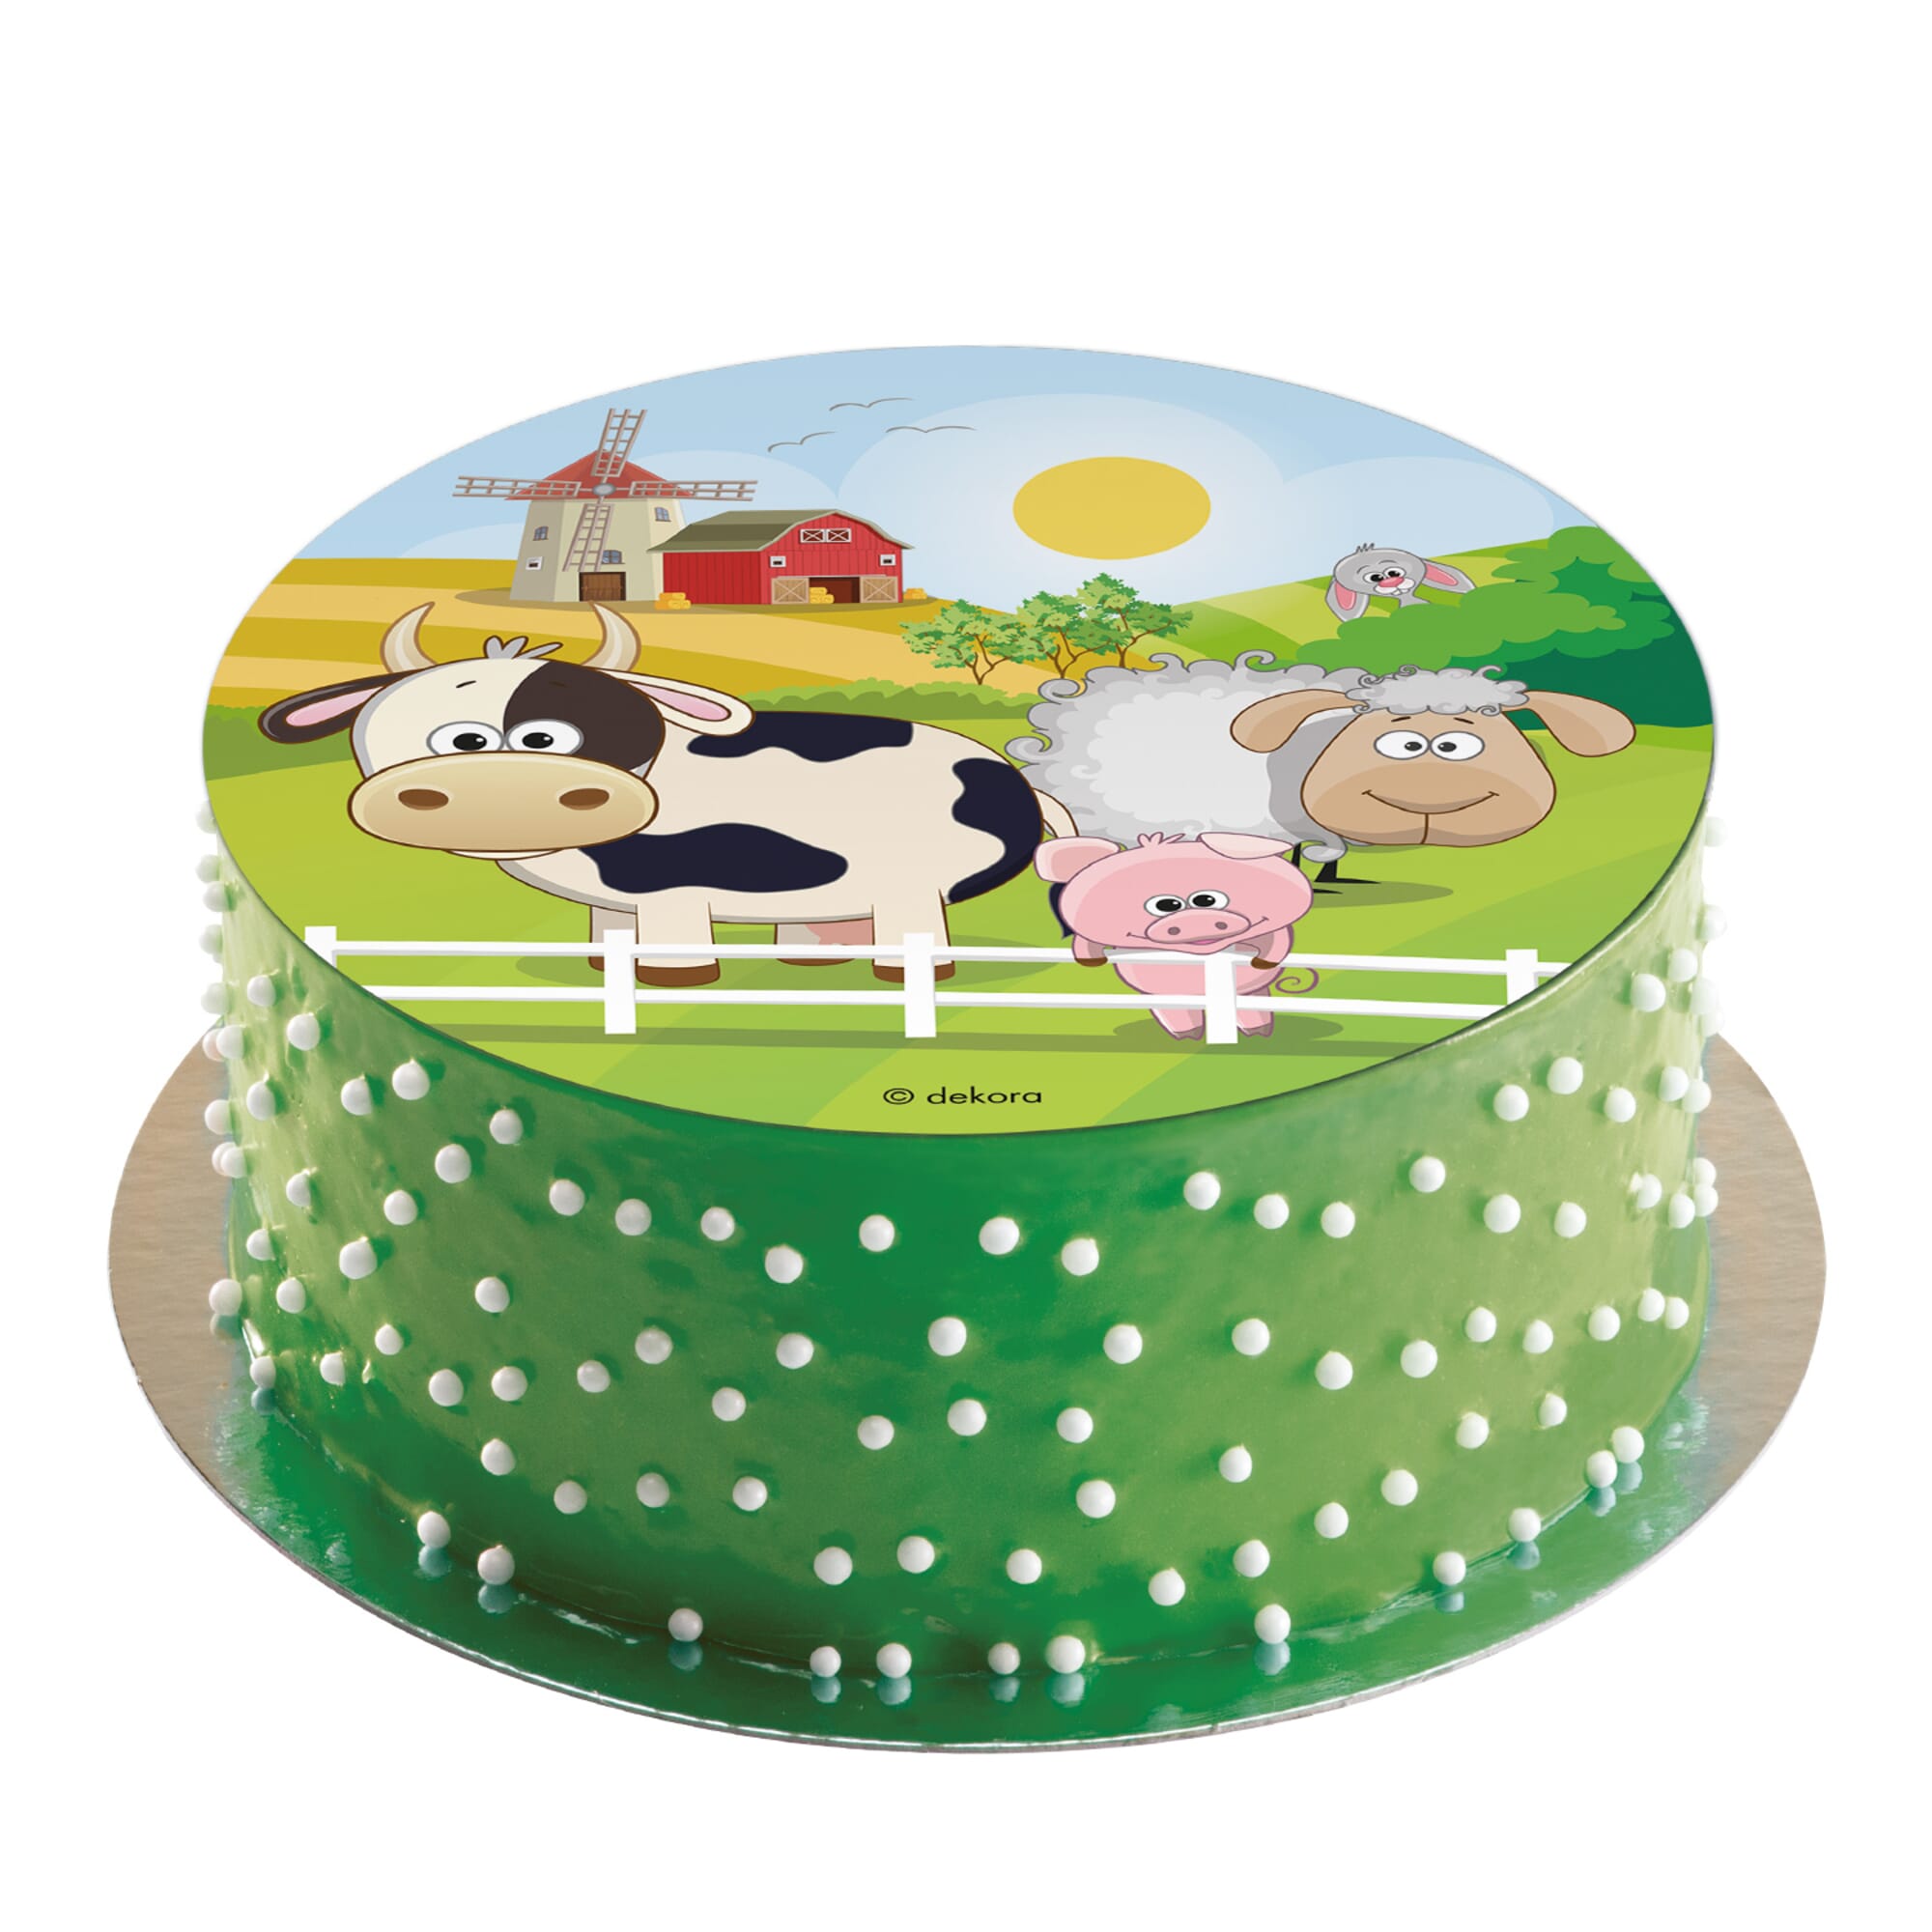 Décoration de gâteau comestible Farm Animals Ferme Vache Cochon